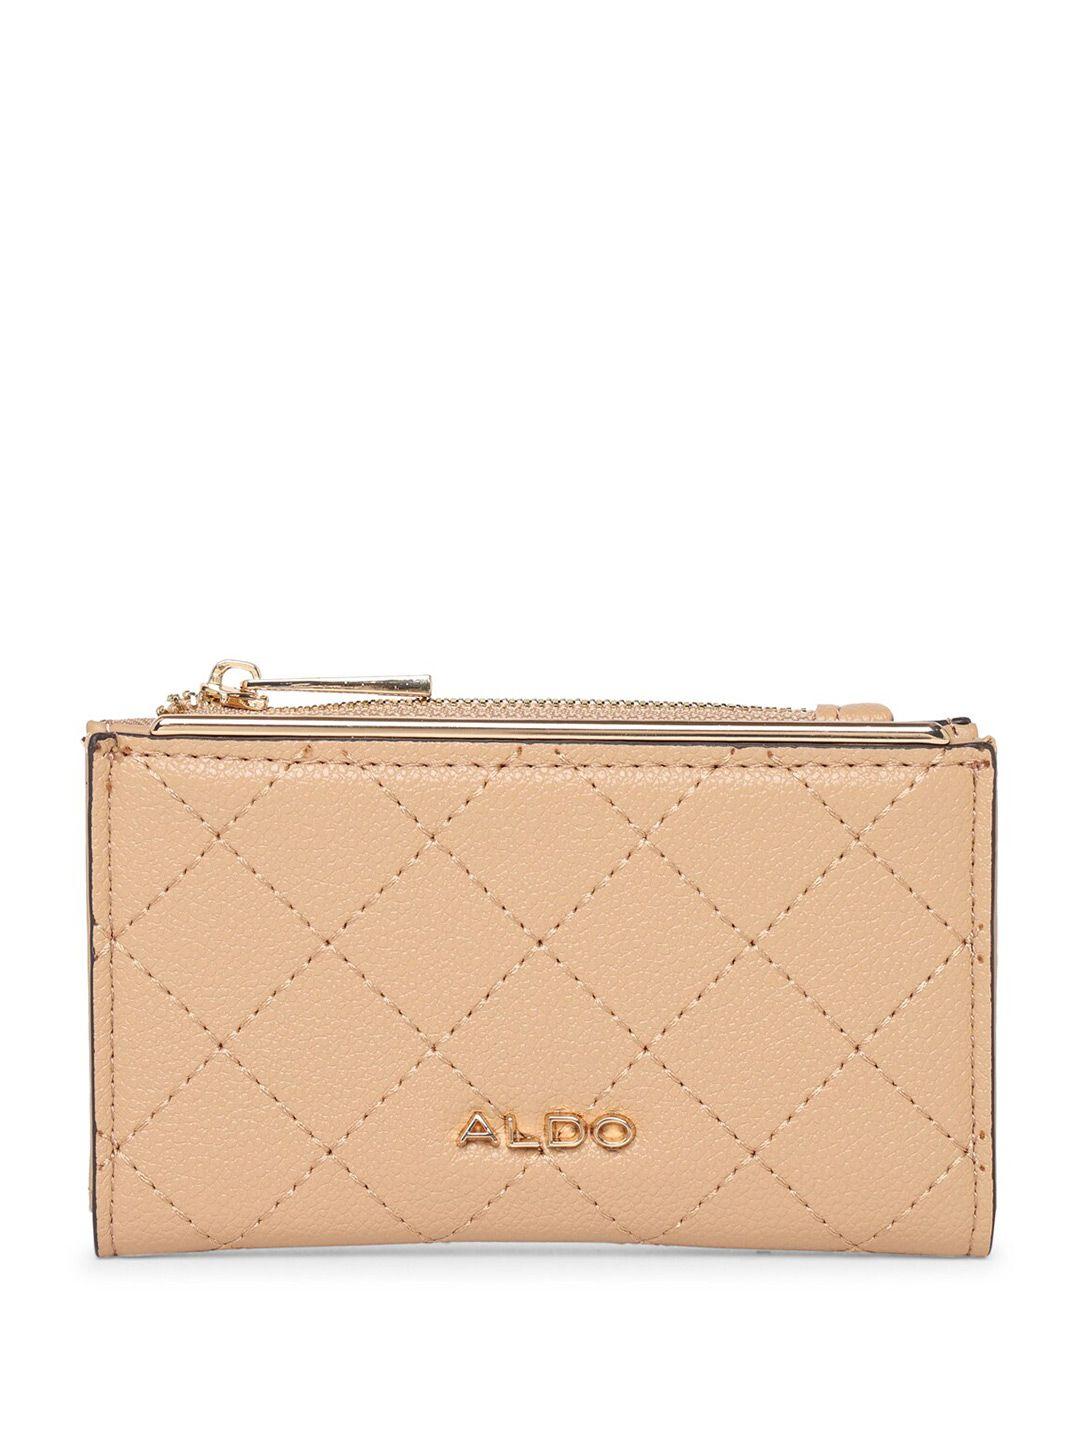 aldo-women-textured-zip-around-wallet